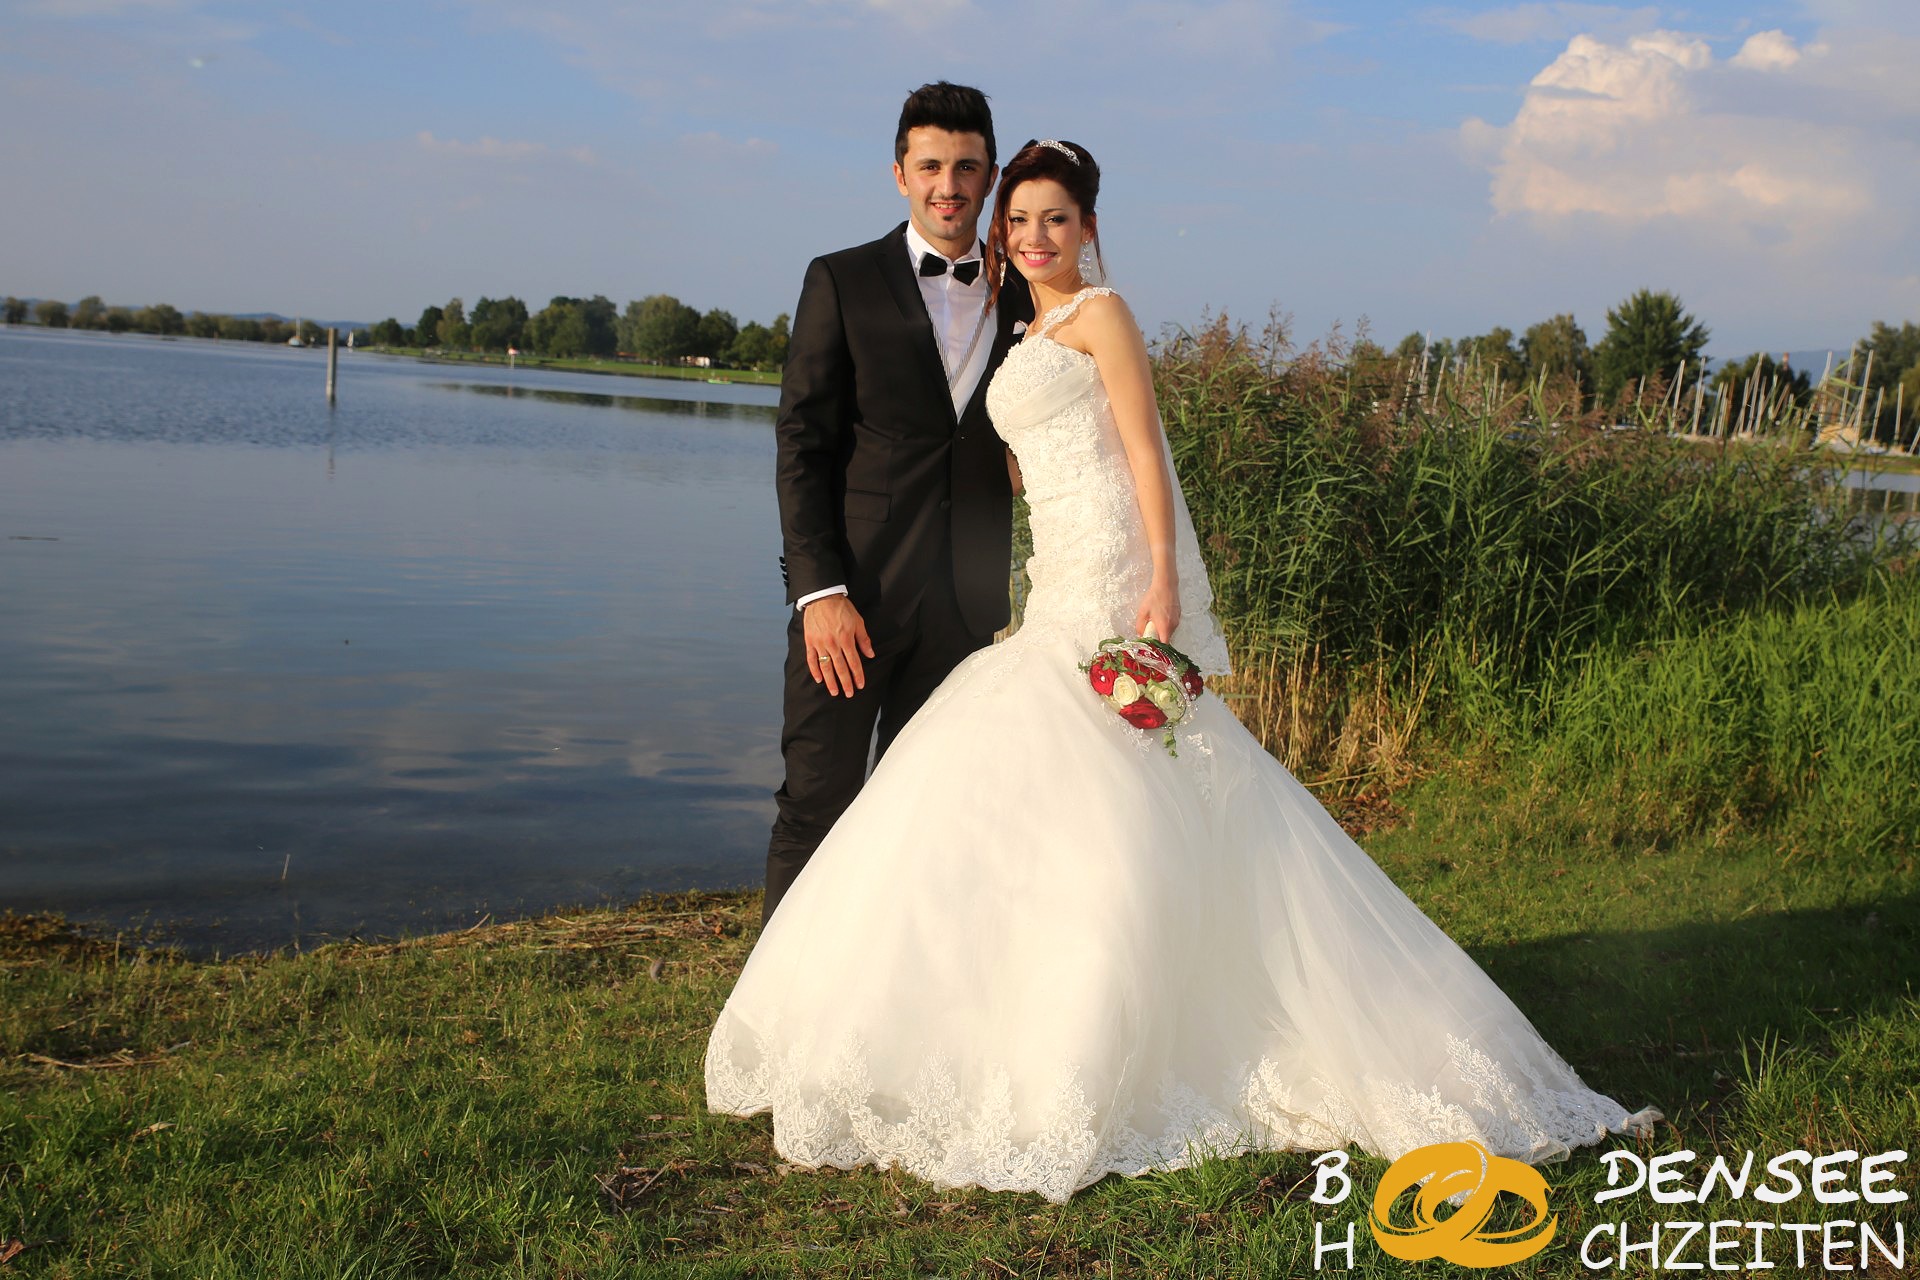 01 2014 09 06 Hochzeit Hohenems Sercan Muazzez BODENSEE HOCHZEITEN COM IMG 8611